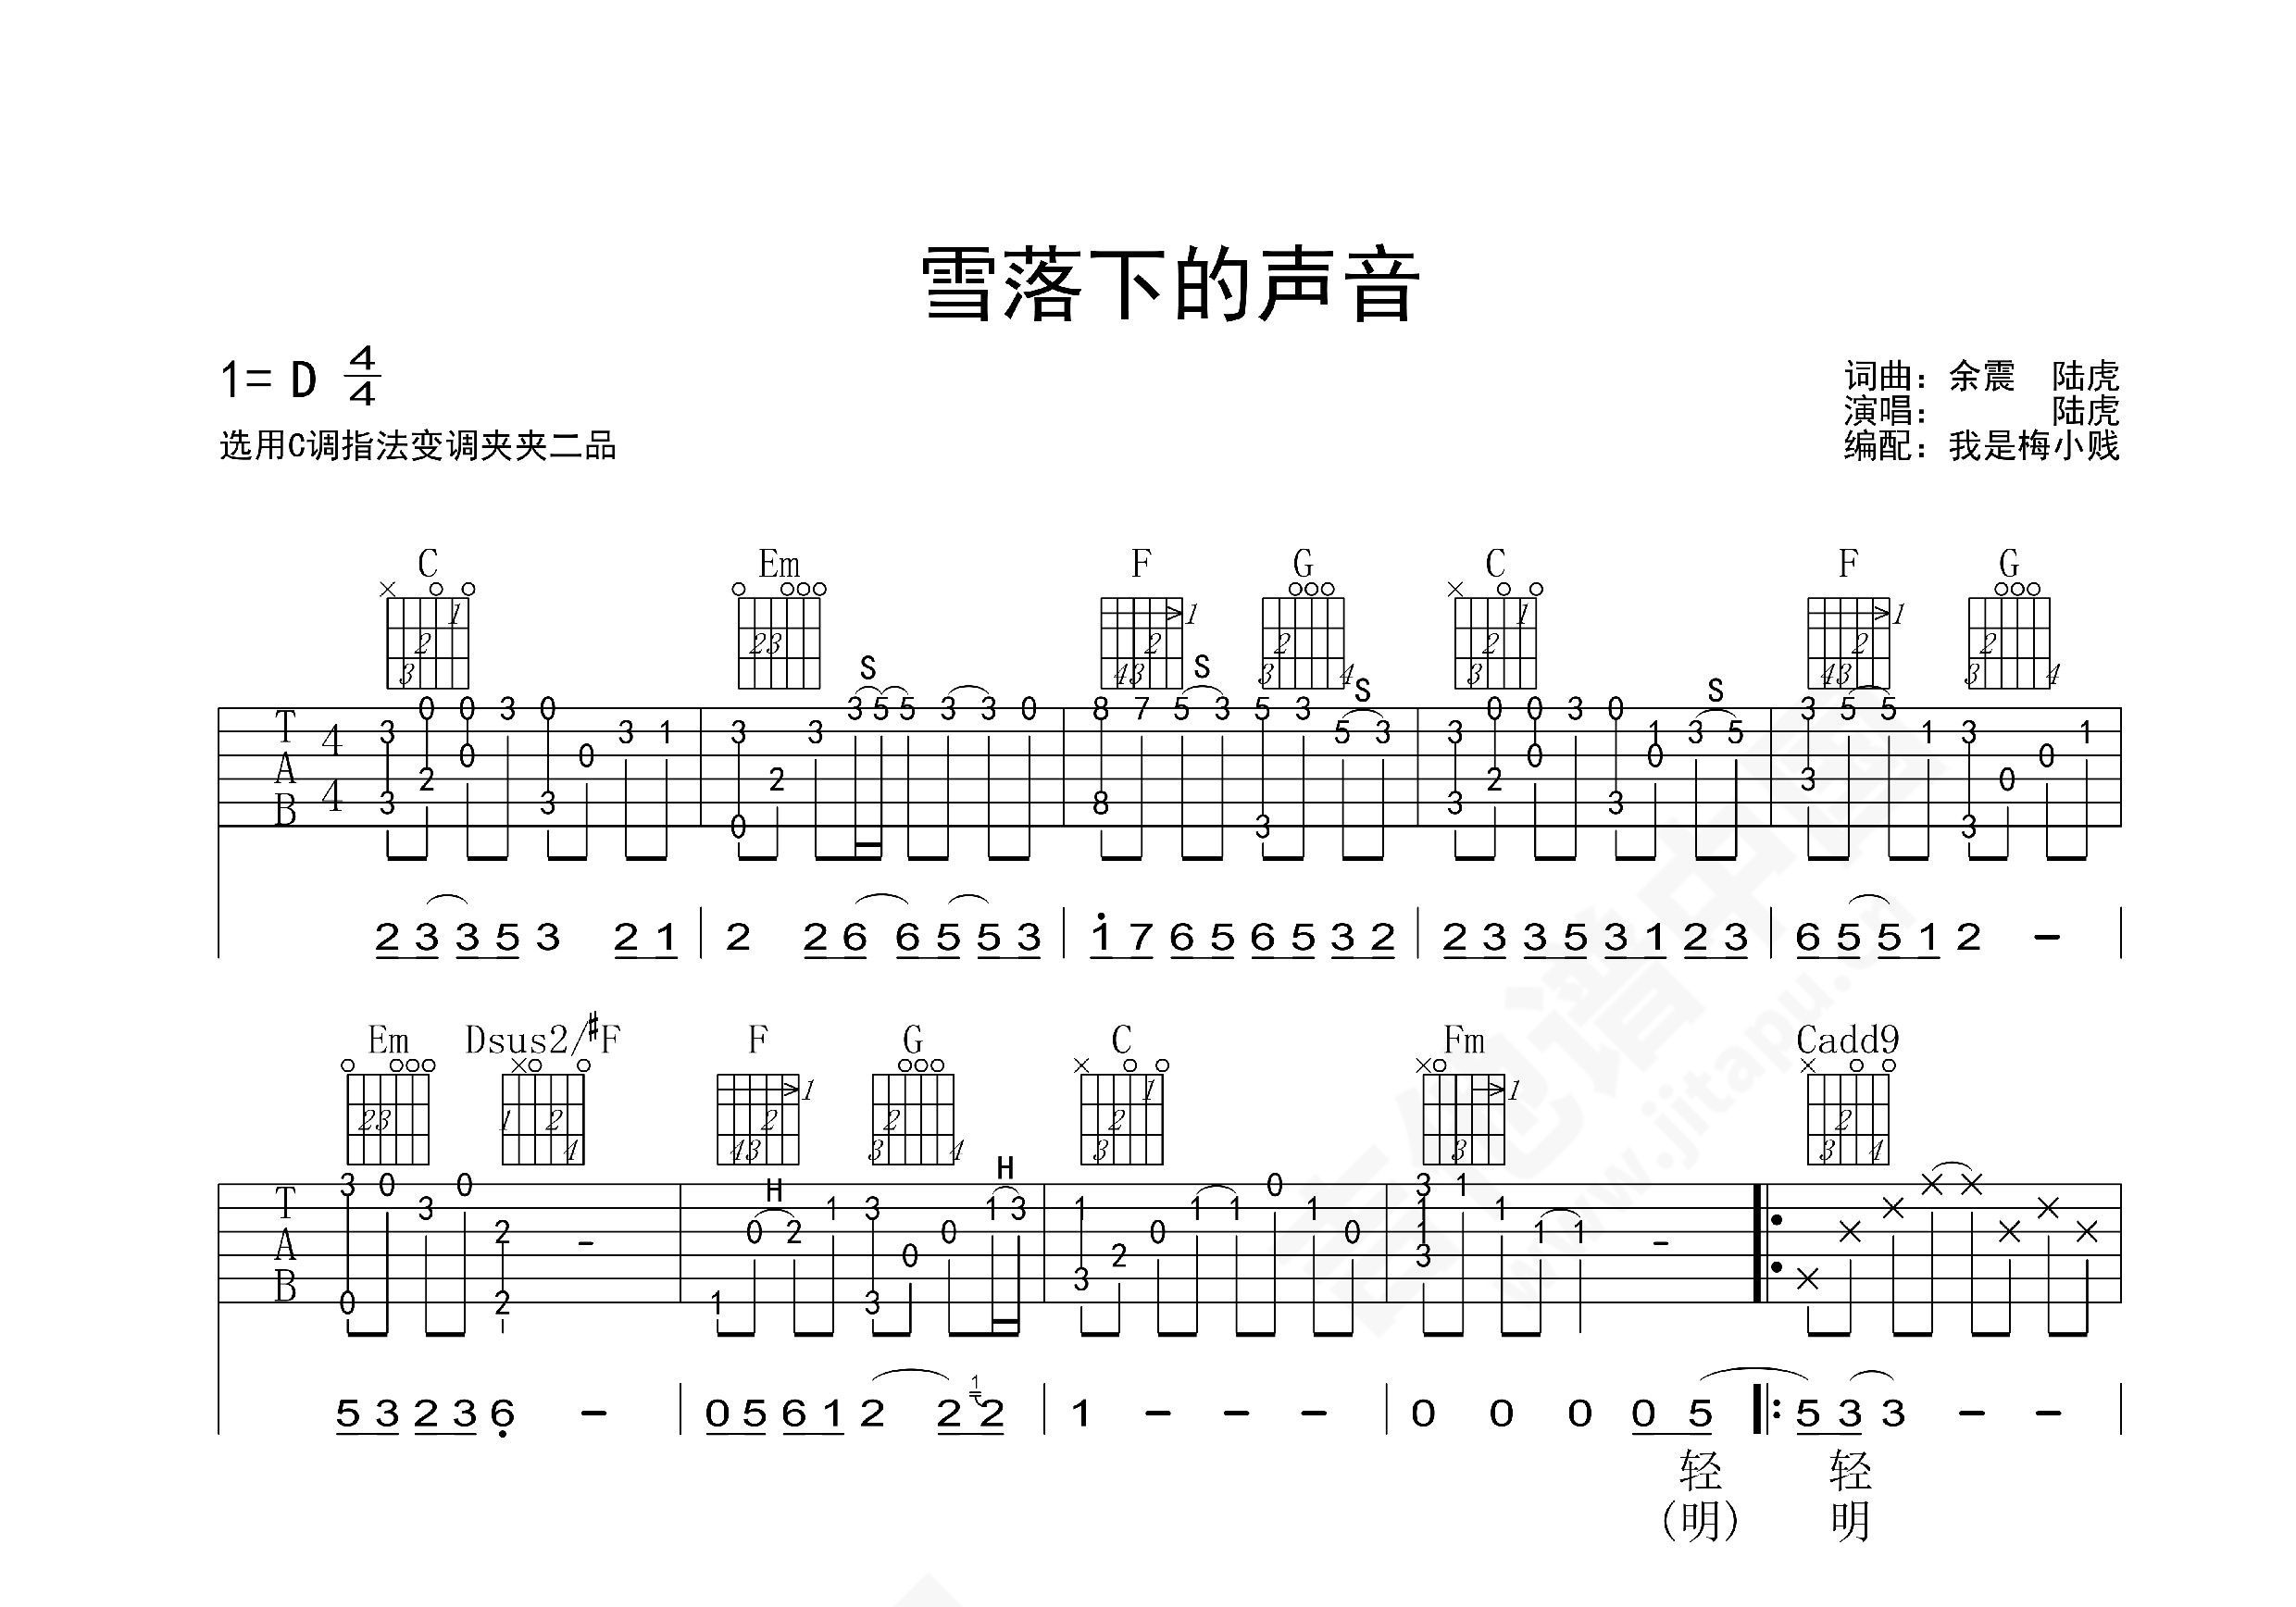 林俊杰【雪落下的声音吉他谱】_在线免费打印下载-爱弹琴乐谱网